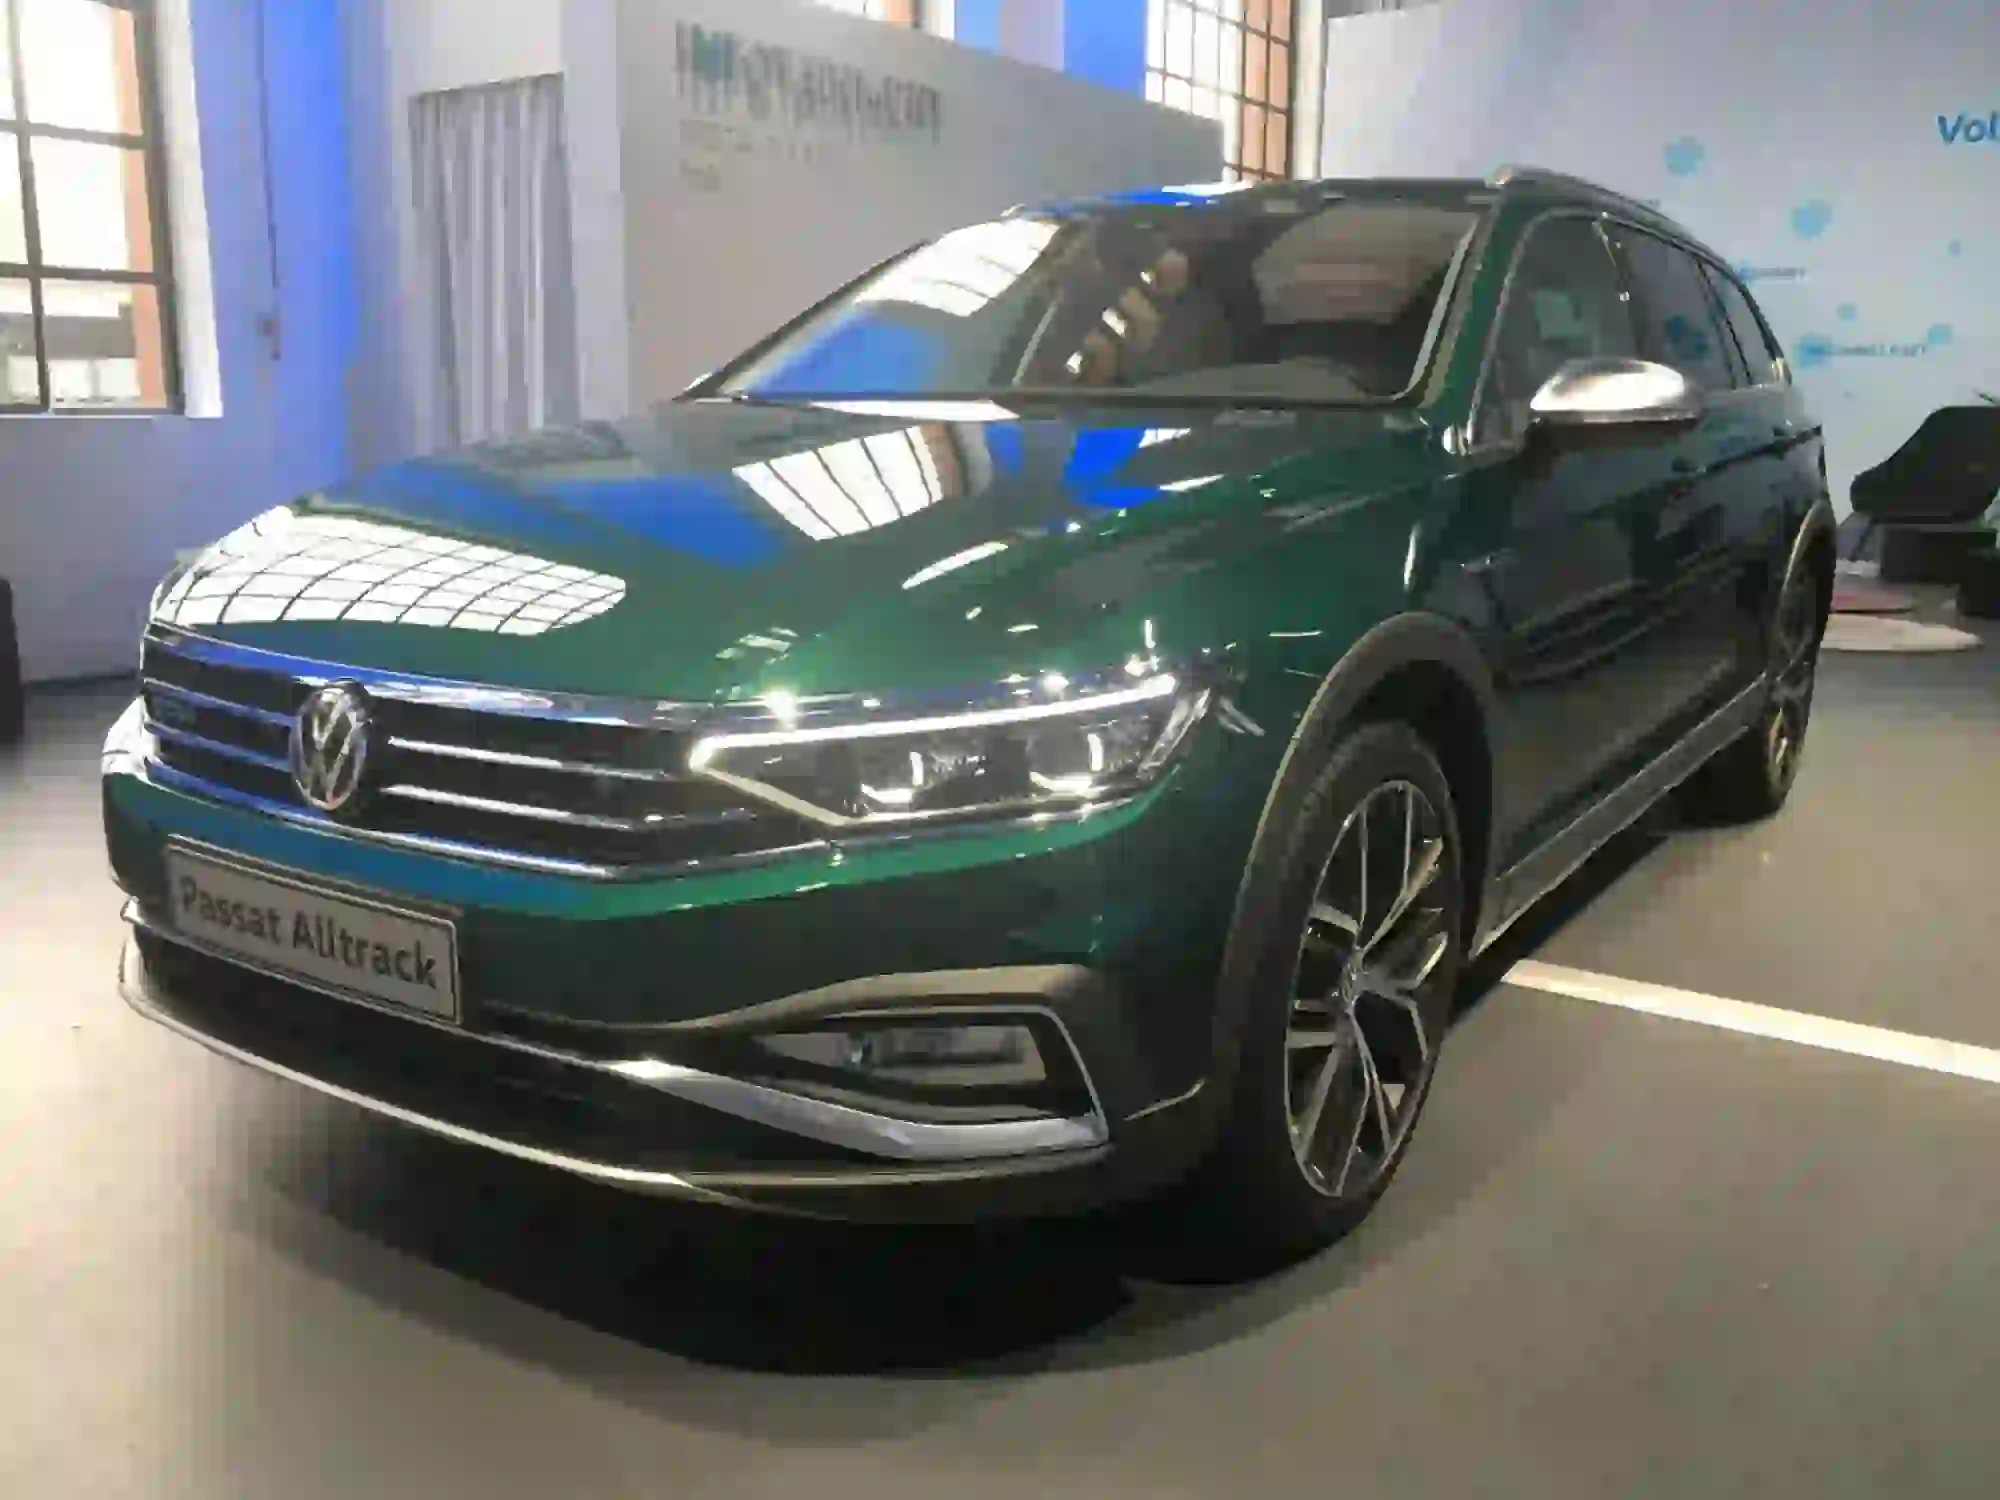 Volkswagen Passat - Workshop Amburgo 2019 - 27